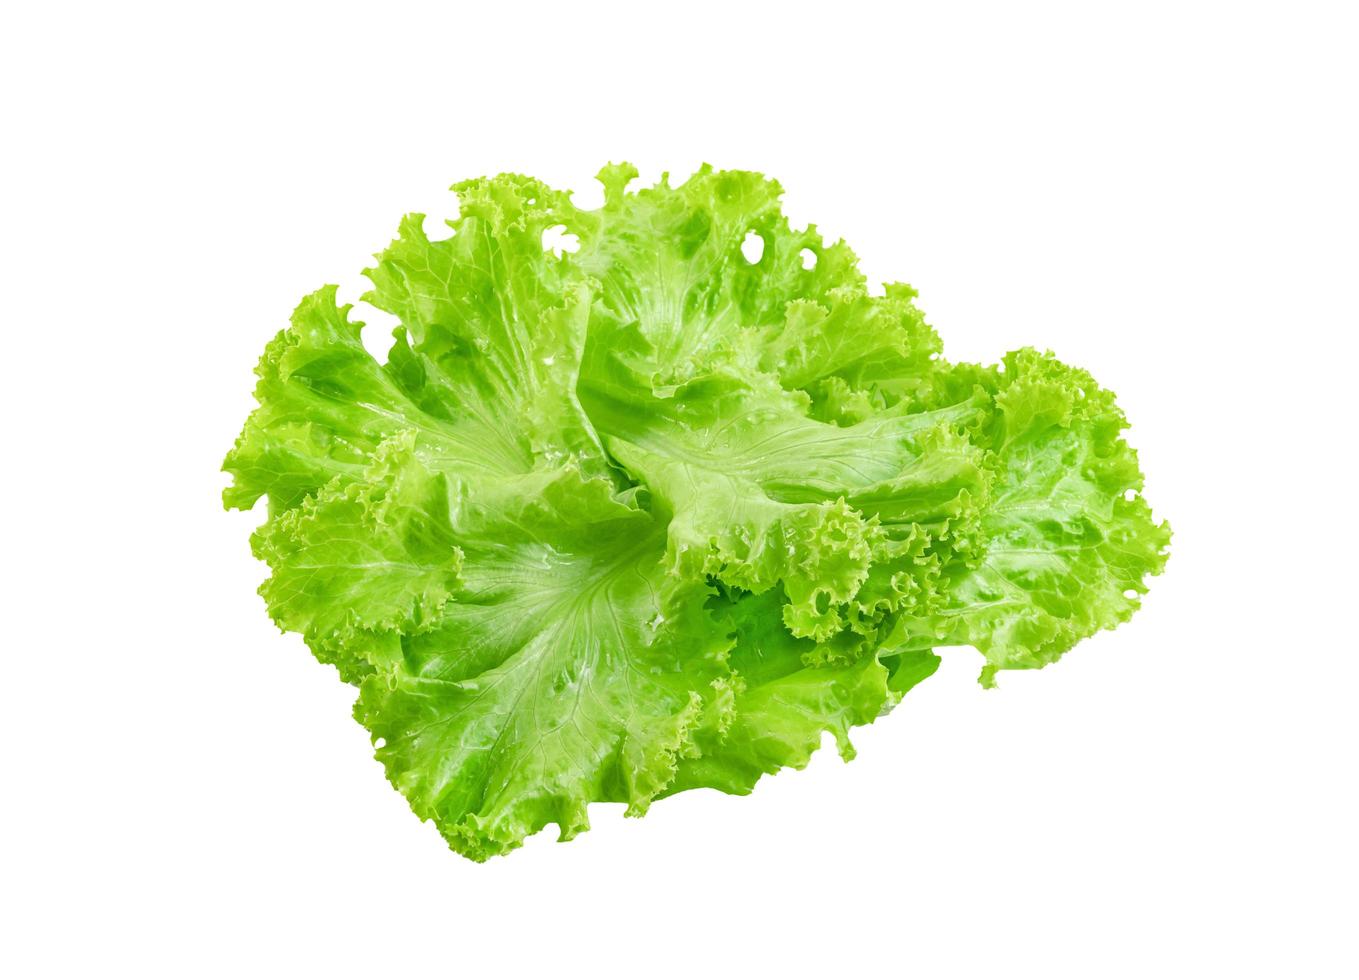 foglia di lattuga isolata su sfondo bianco, motivo a foglie verdi, ingrediente per insalata foto